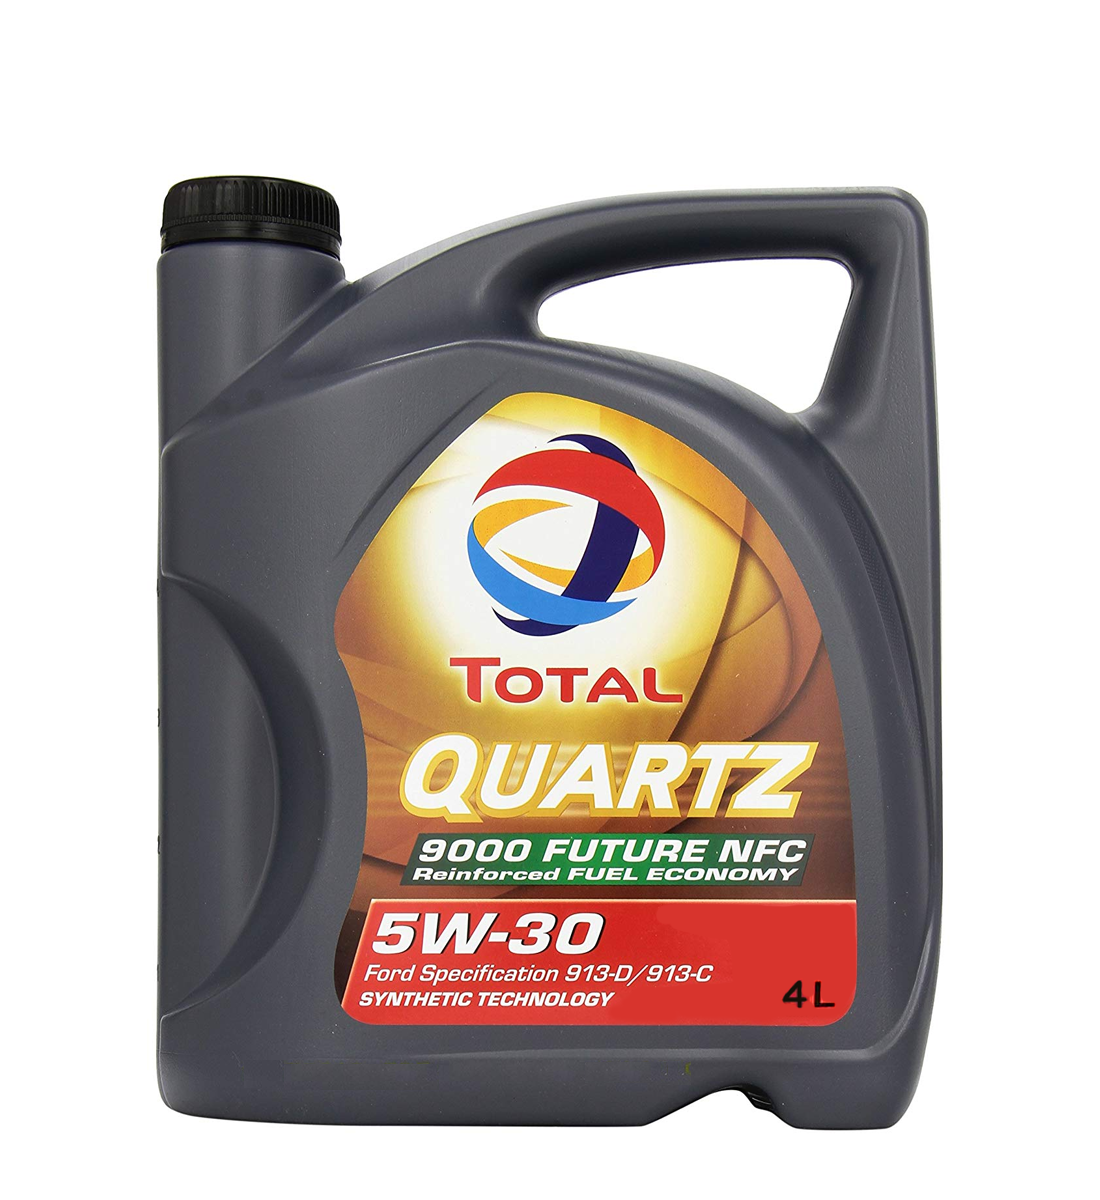 Aceite Total Quartz 9000 Sintético 5W40 x 4 Litros